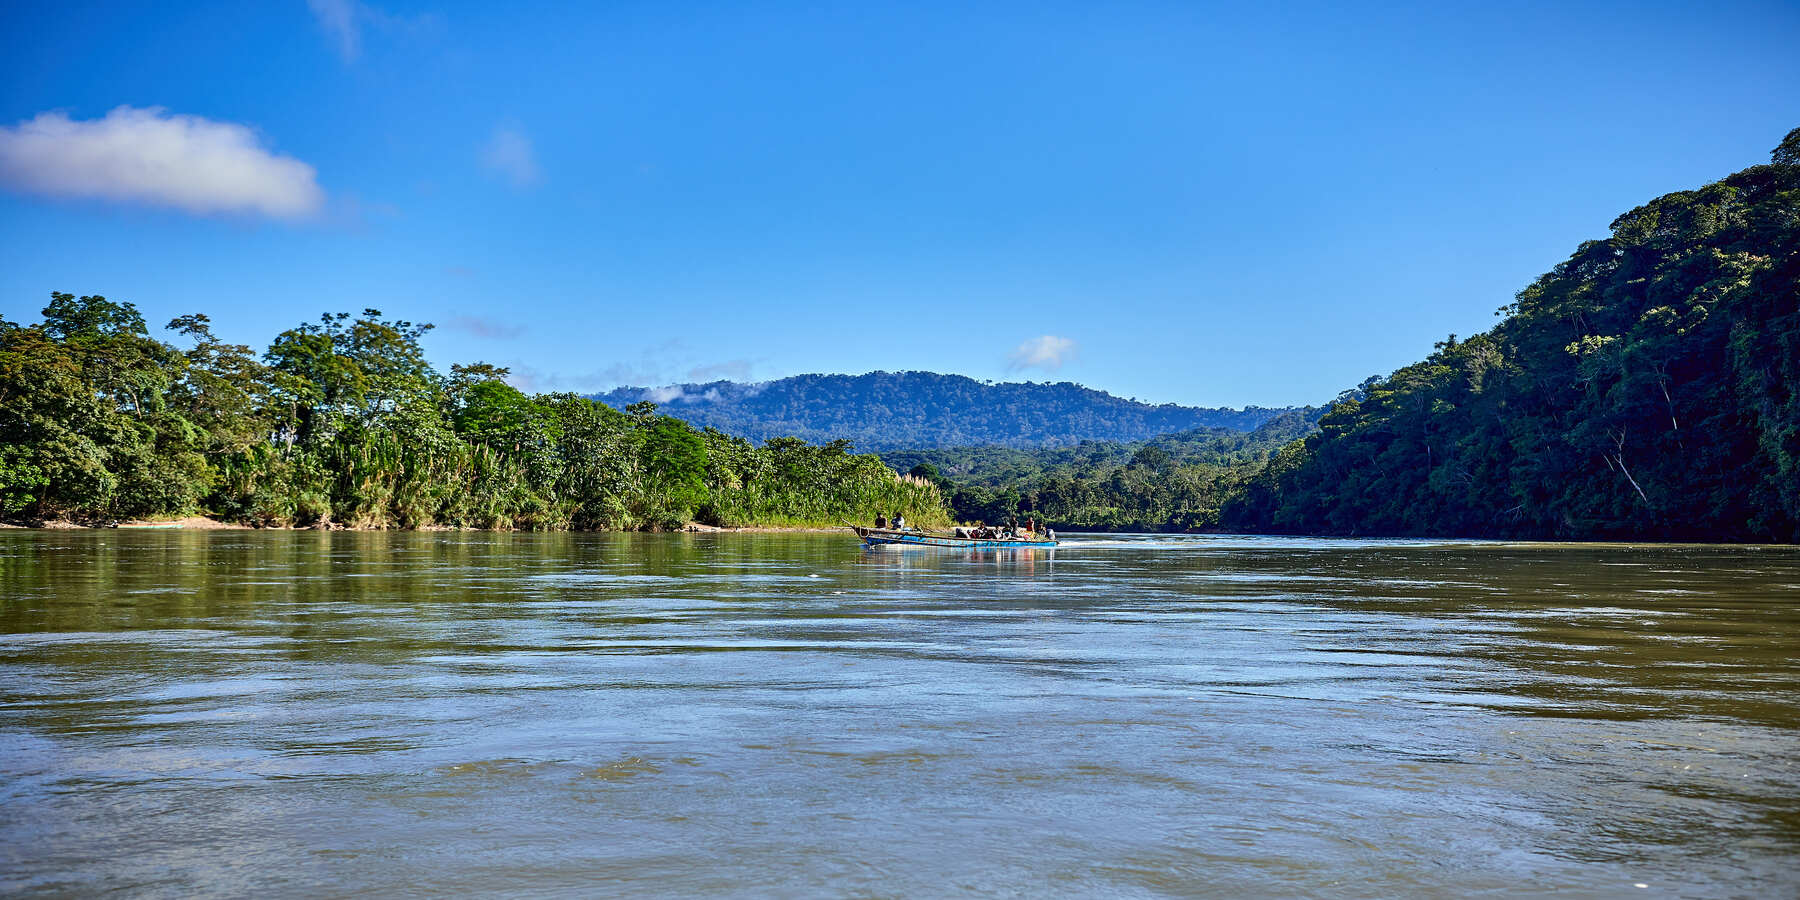 Tag 1: Startschuss unseres Amazonas-Abenteuers